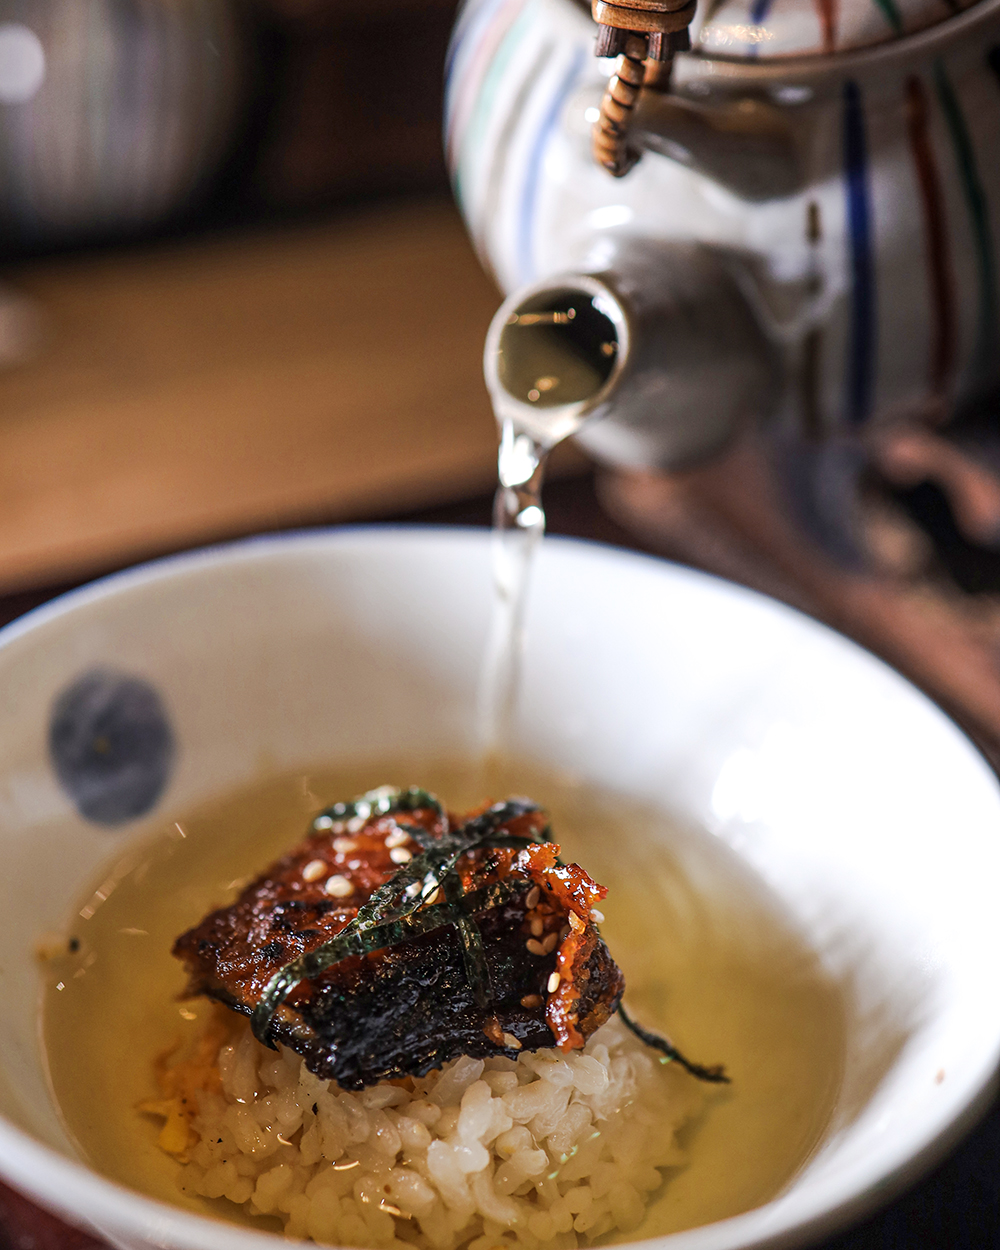 日式居酒屋「鳥丈爐端燒」套餐內容以「蒲燒鰻魚釜飯三吃」為主食